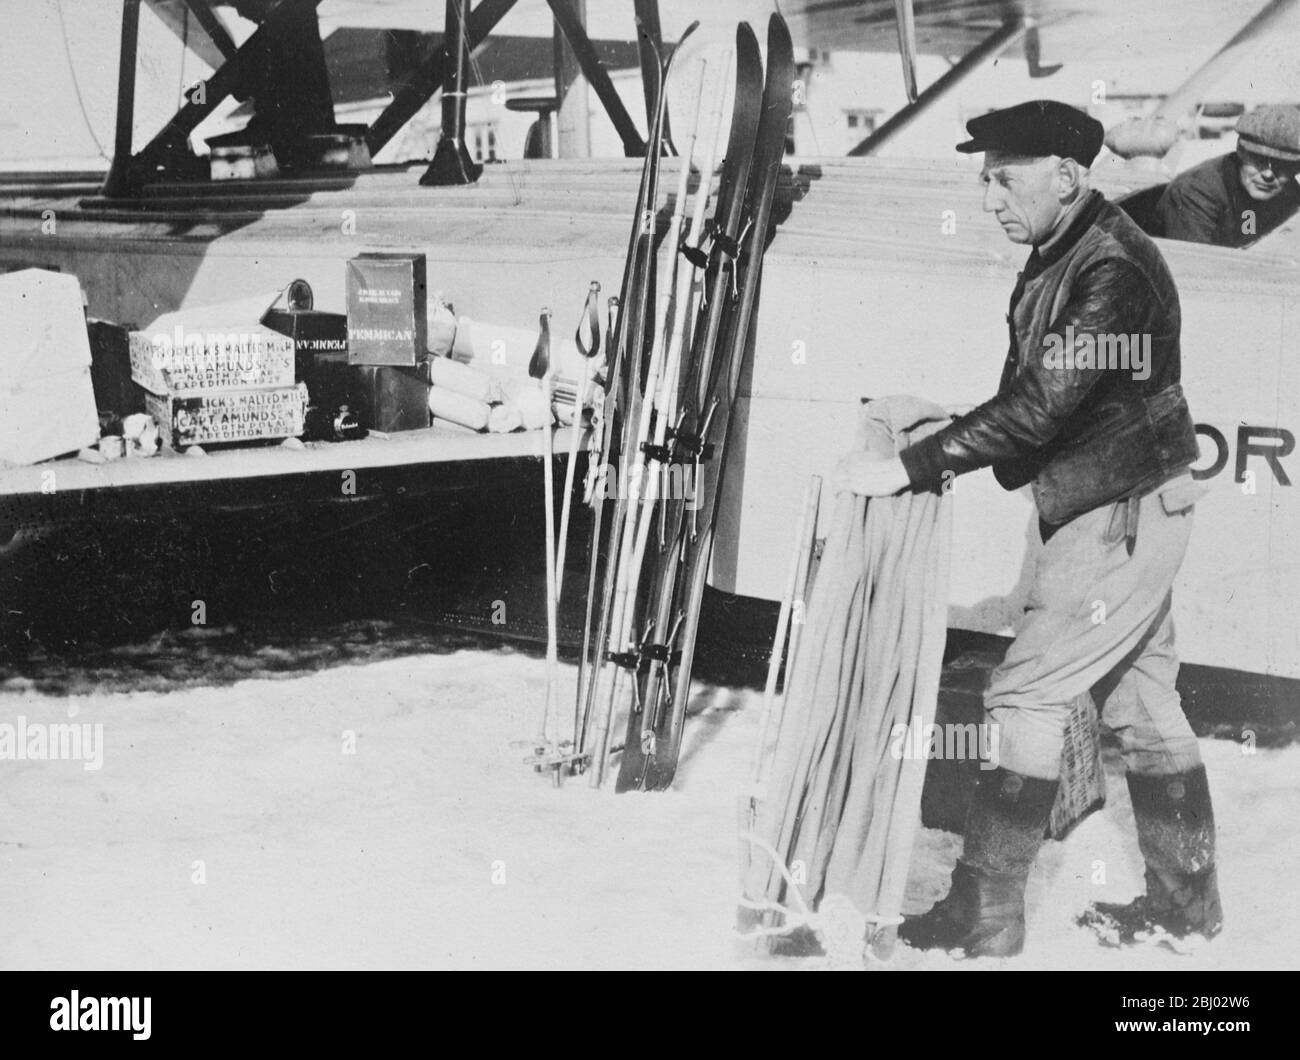 Misterio de Amundsen , primeras fotografías del inicio del vuelo polar Amundsen Ellsworth - Amundsen supervisando la carga de suministros de alimentos y equipo de marcha justo antes del inicio - 17 de junio de 1925 Foto de stock